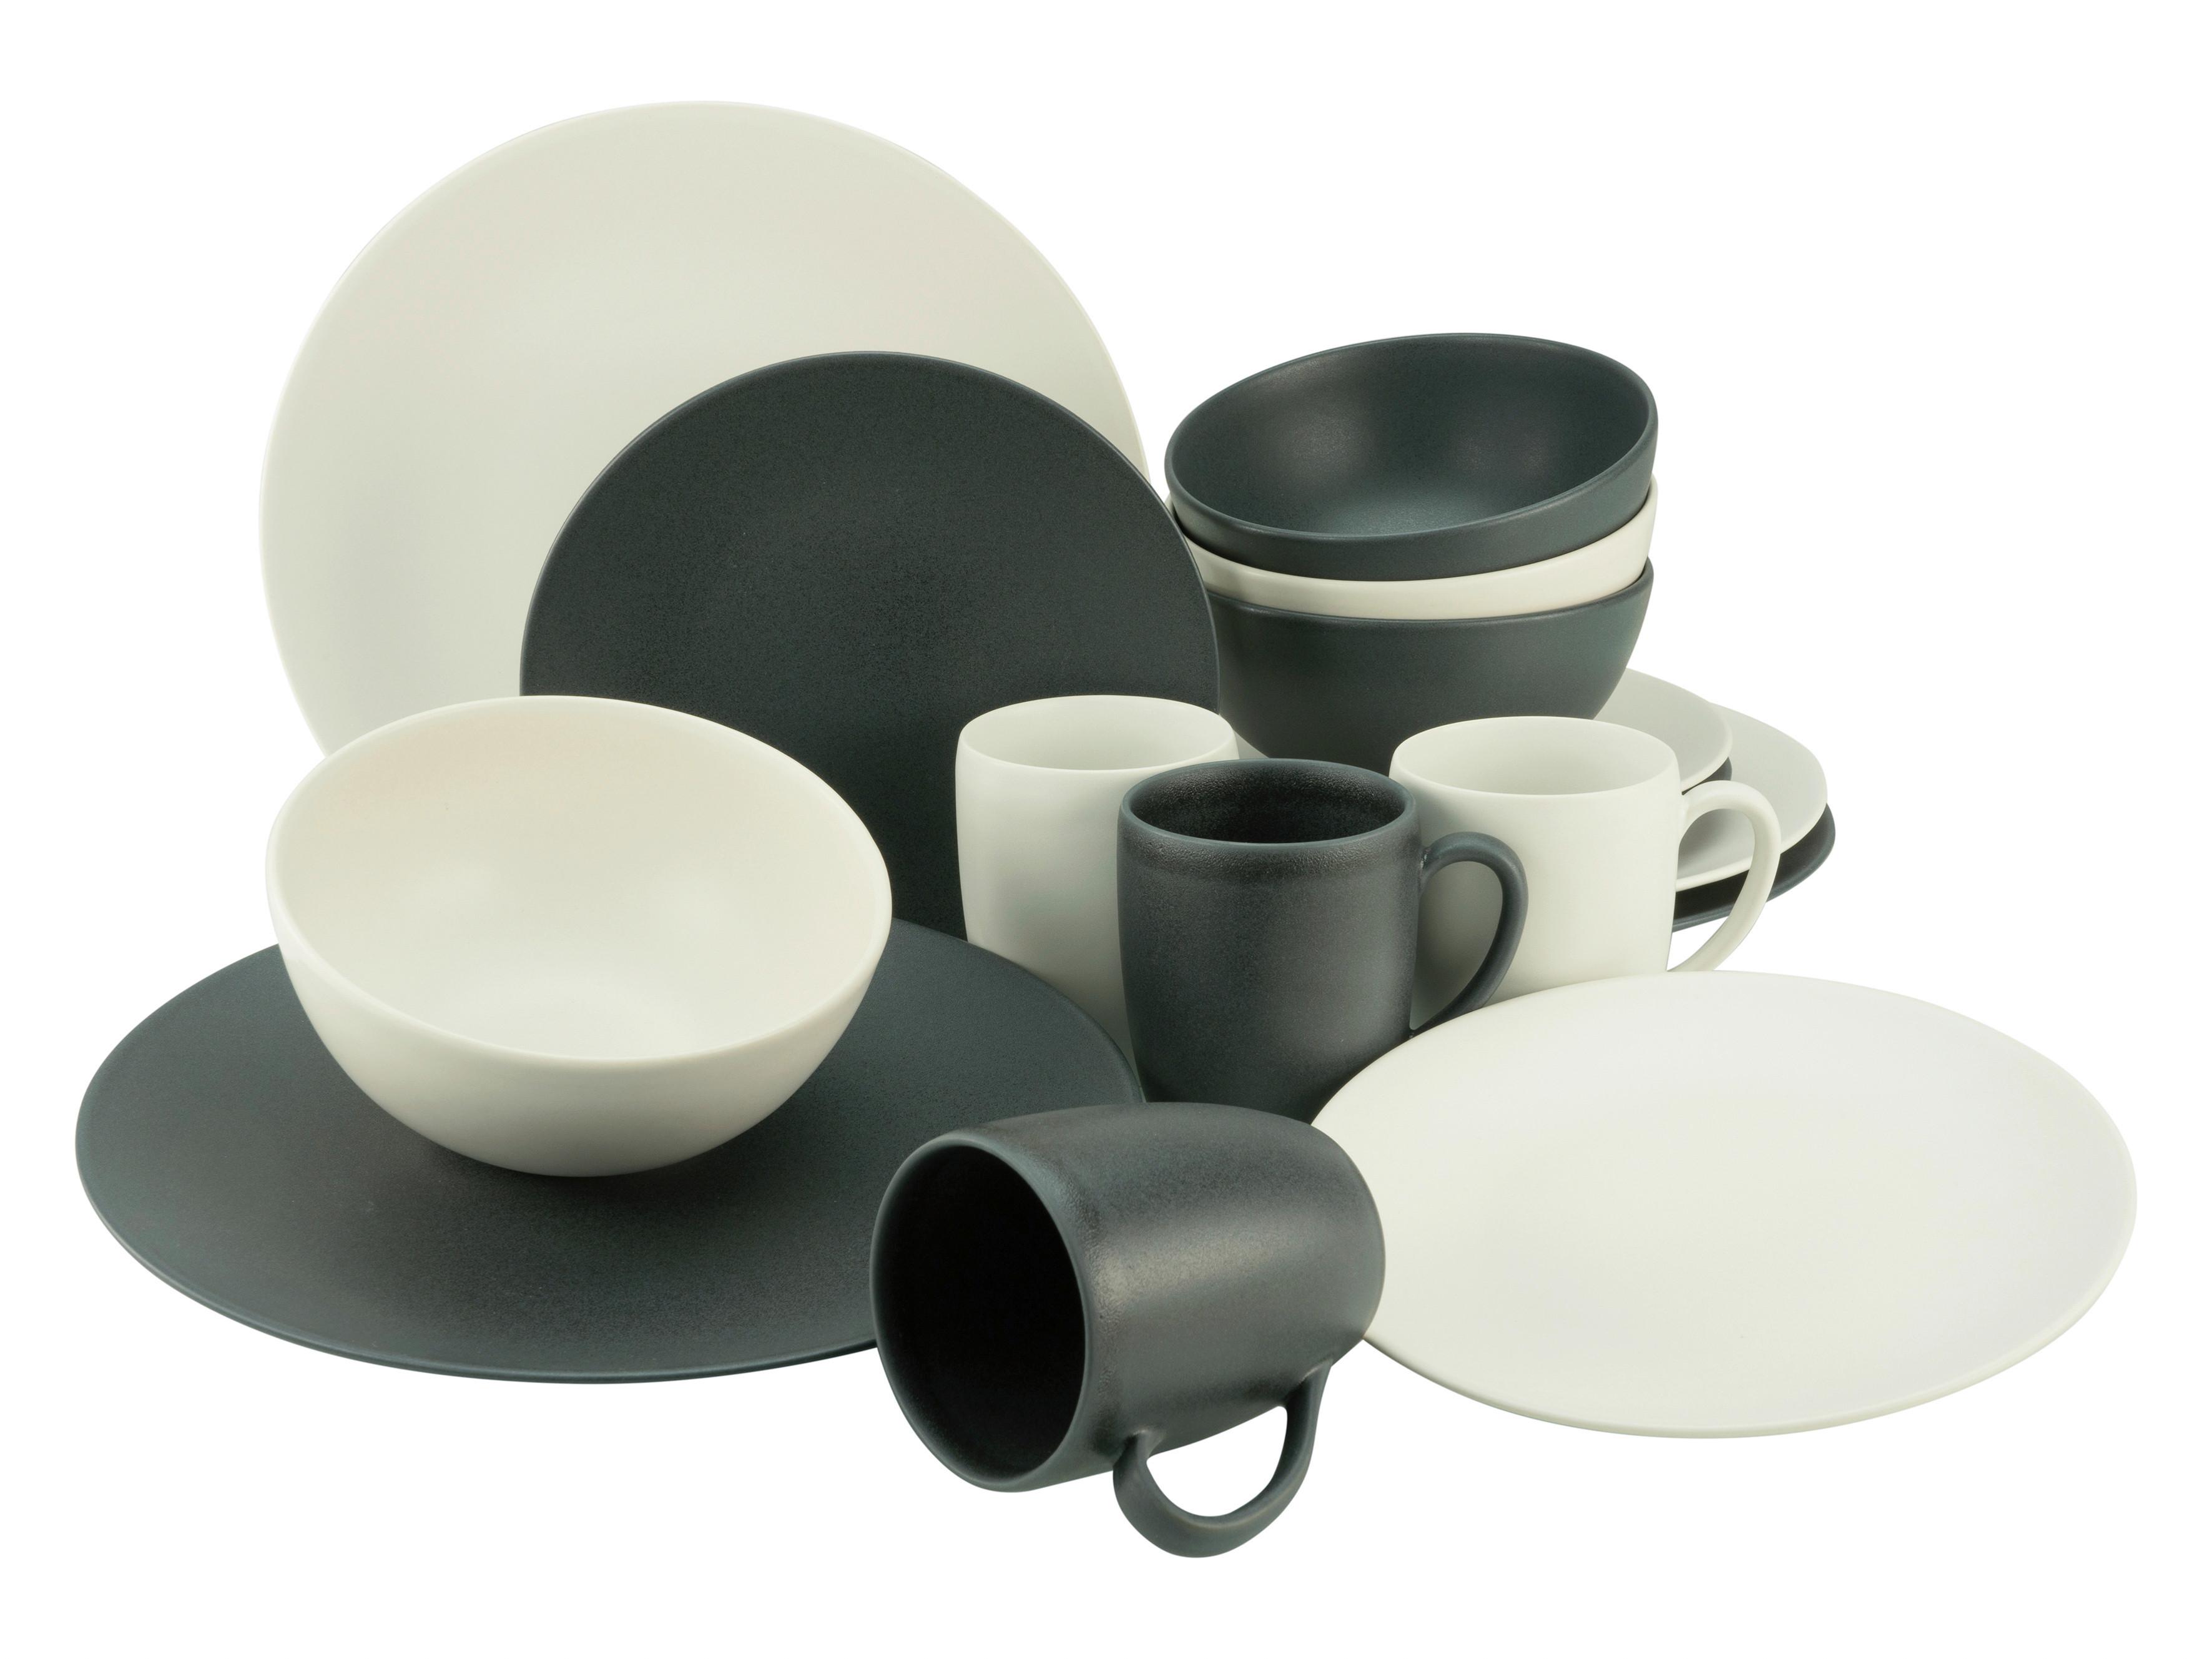 SERWIS OBIADOWO-ŚNIADANIOWY SOFT TOUCH BLACK&WHITE - czarny/biały, Basics, ceramika - Creatable